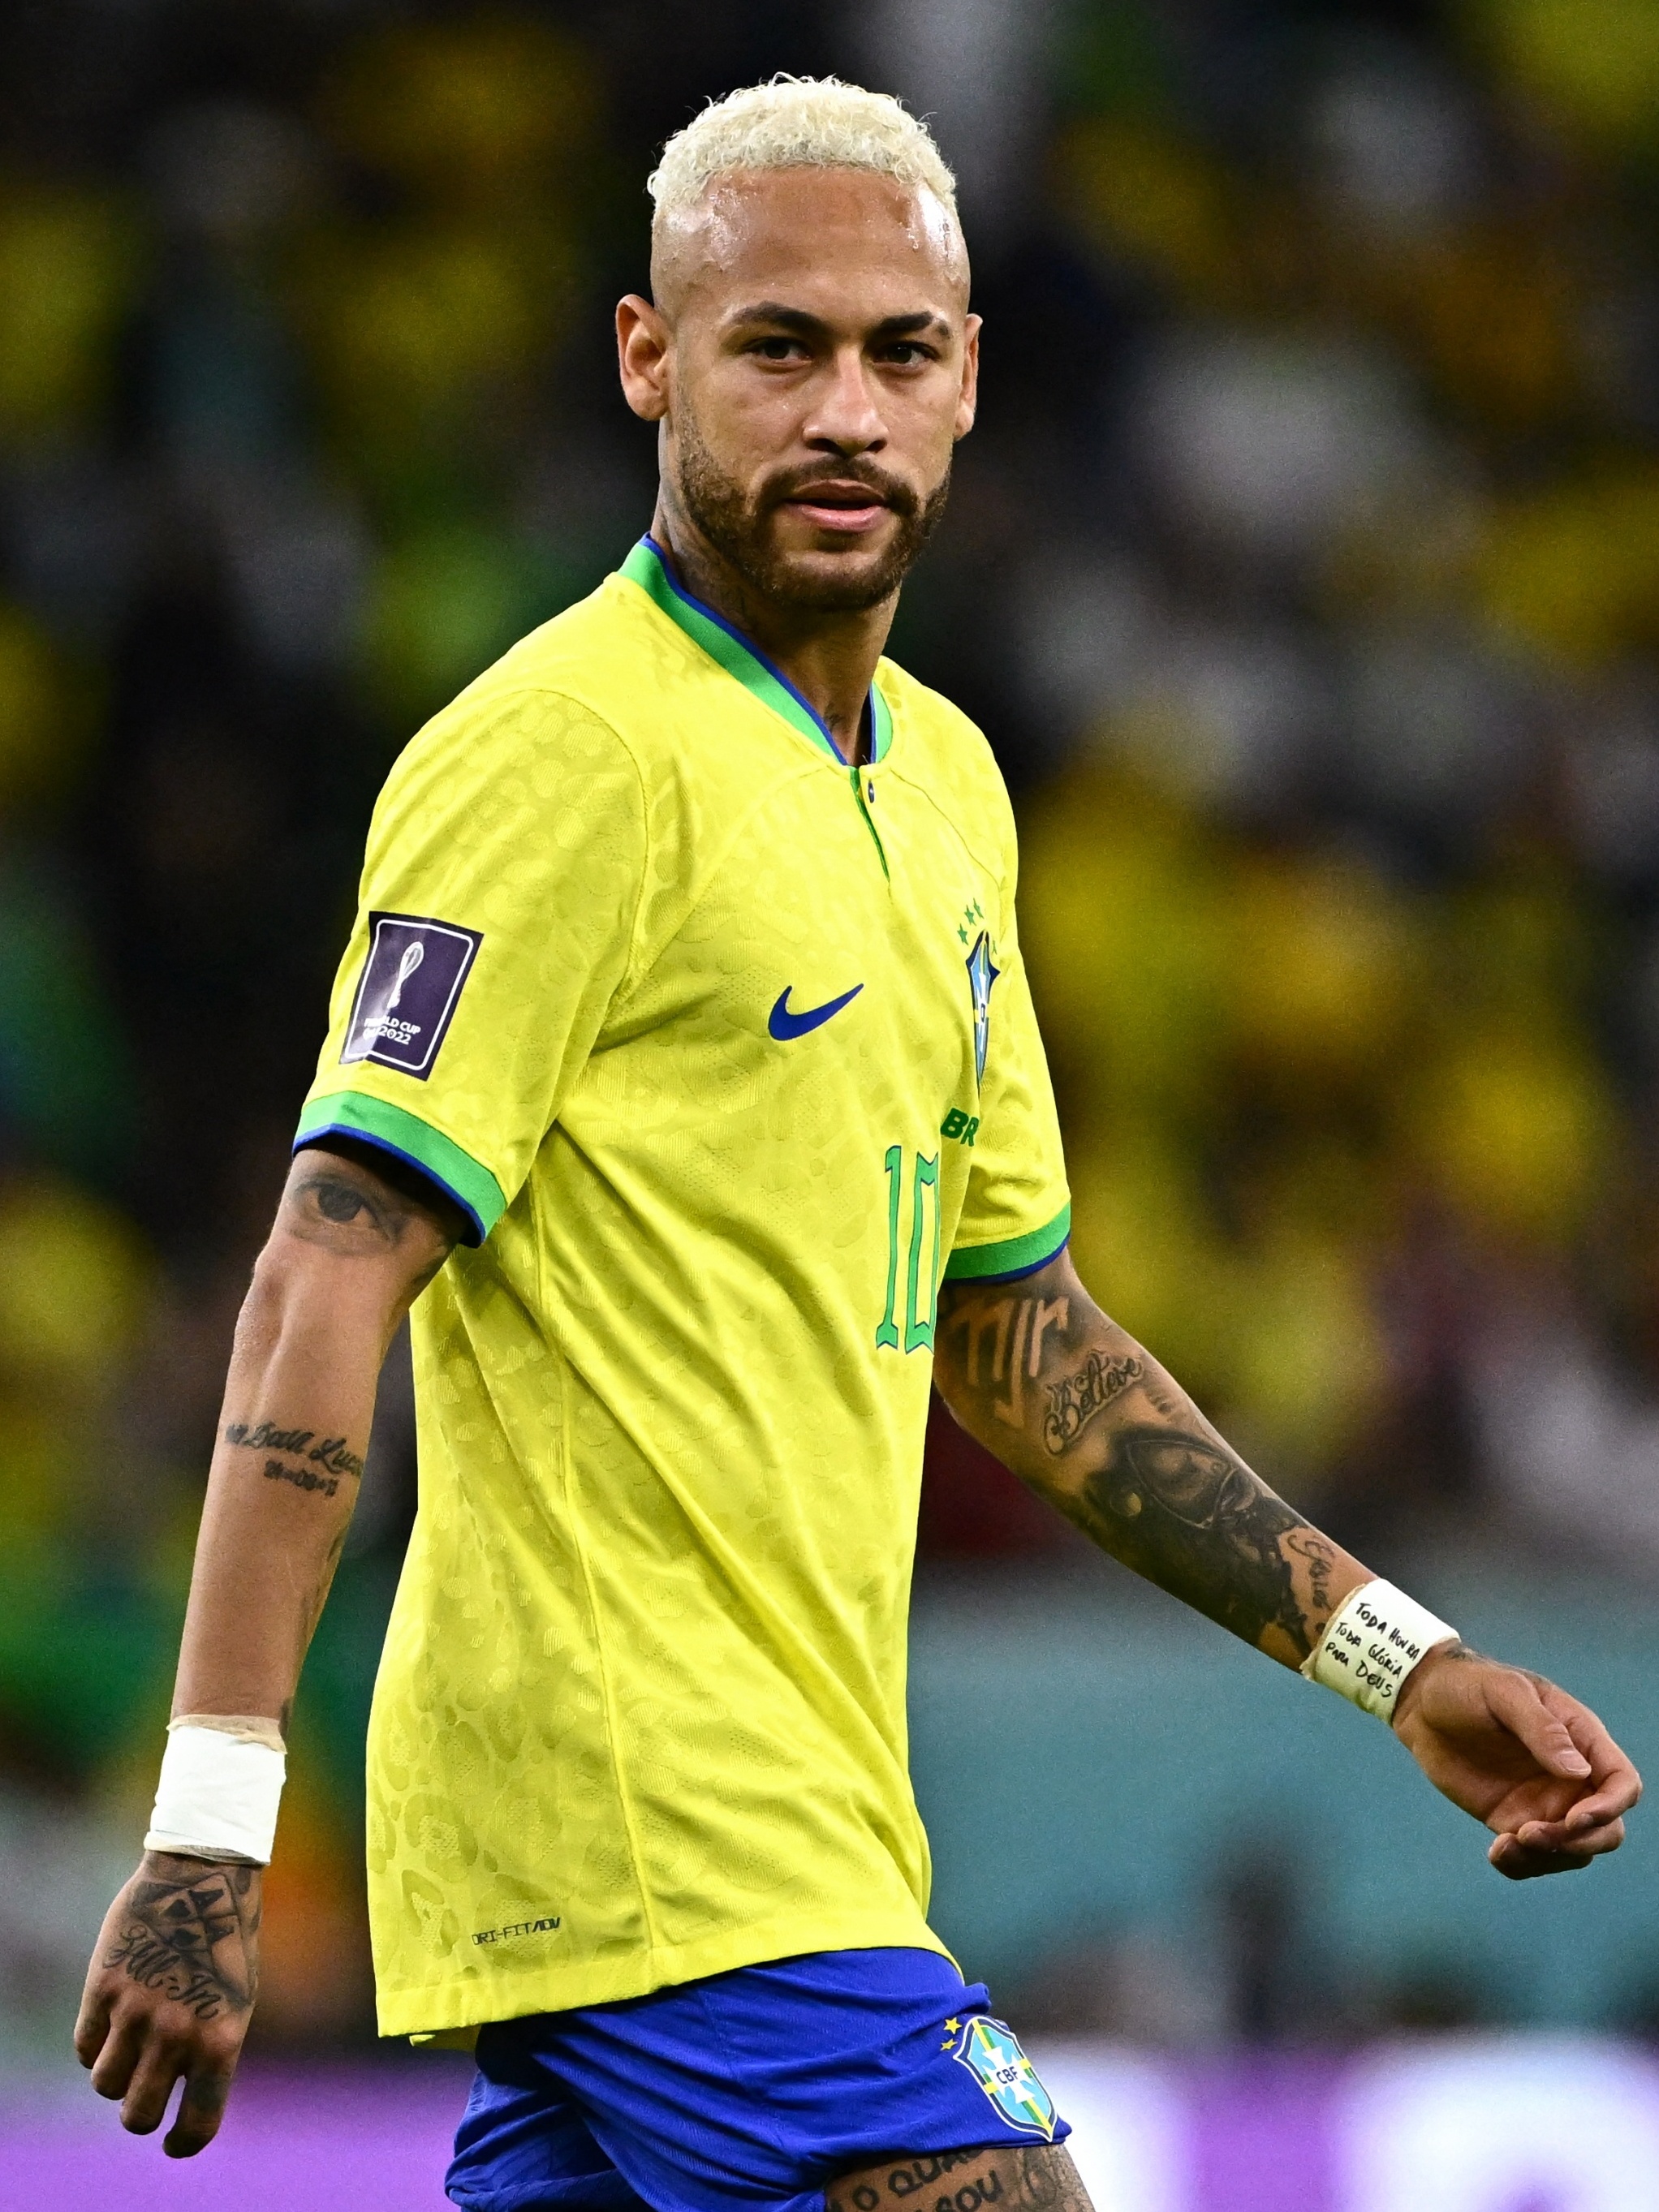 Futebol árabe: os carros que Neymar pode comprar por dia